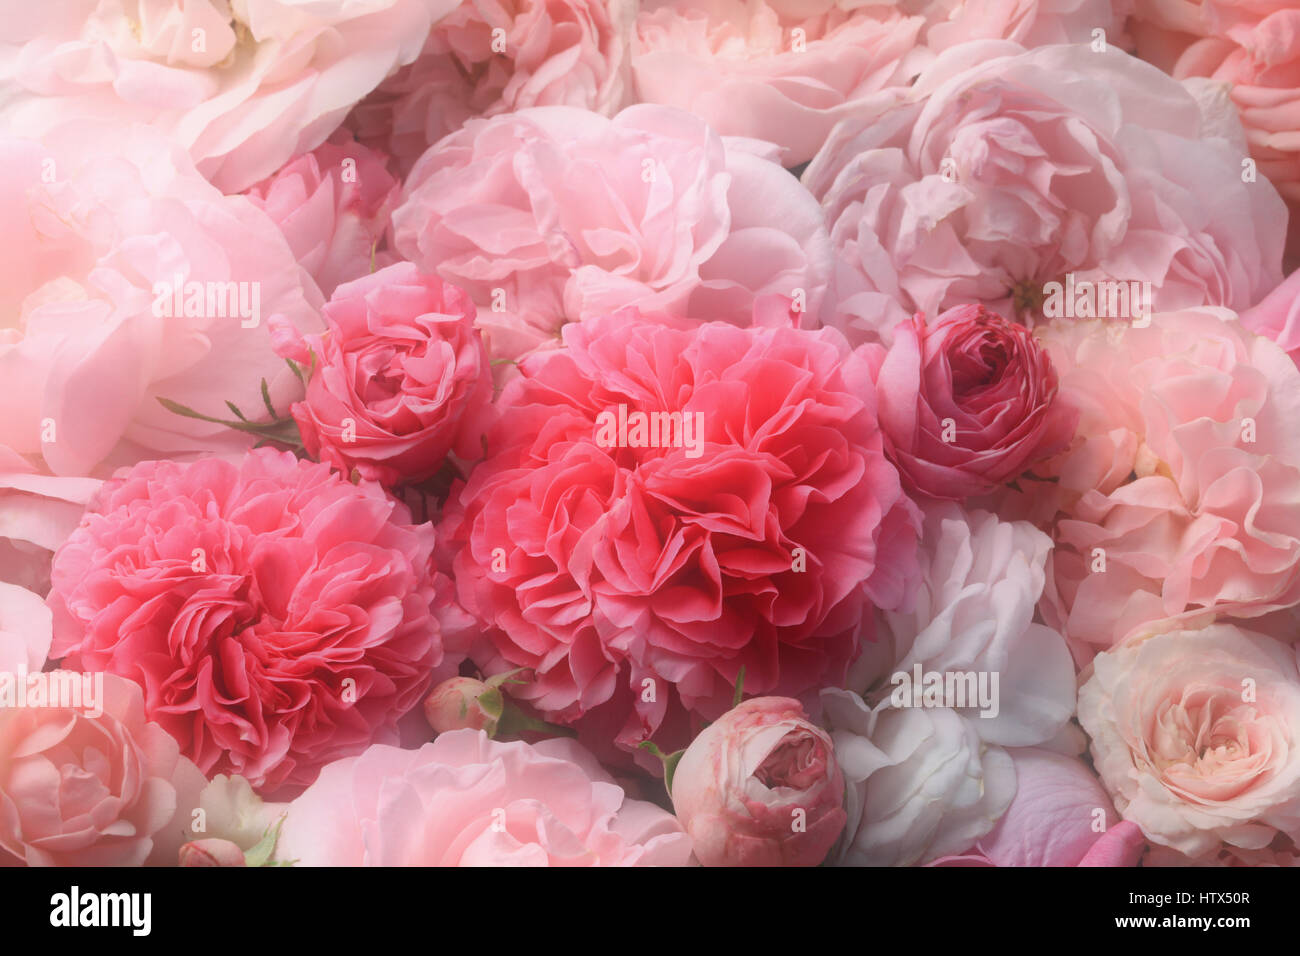 Image de fleurs roses rose vintage nostalgique Banque D'Images